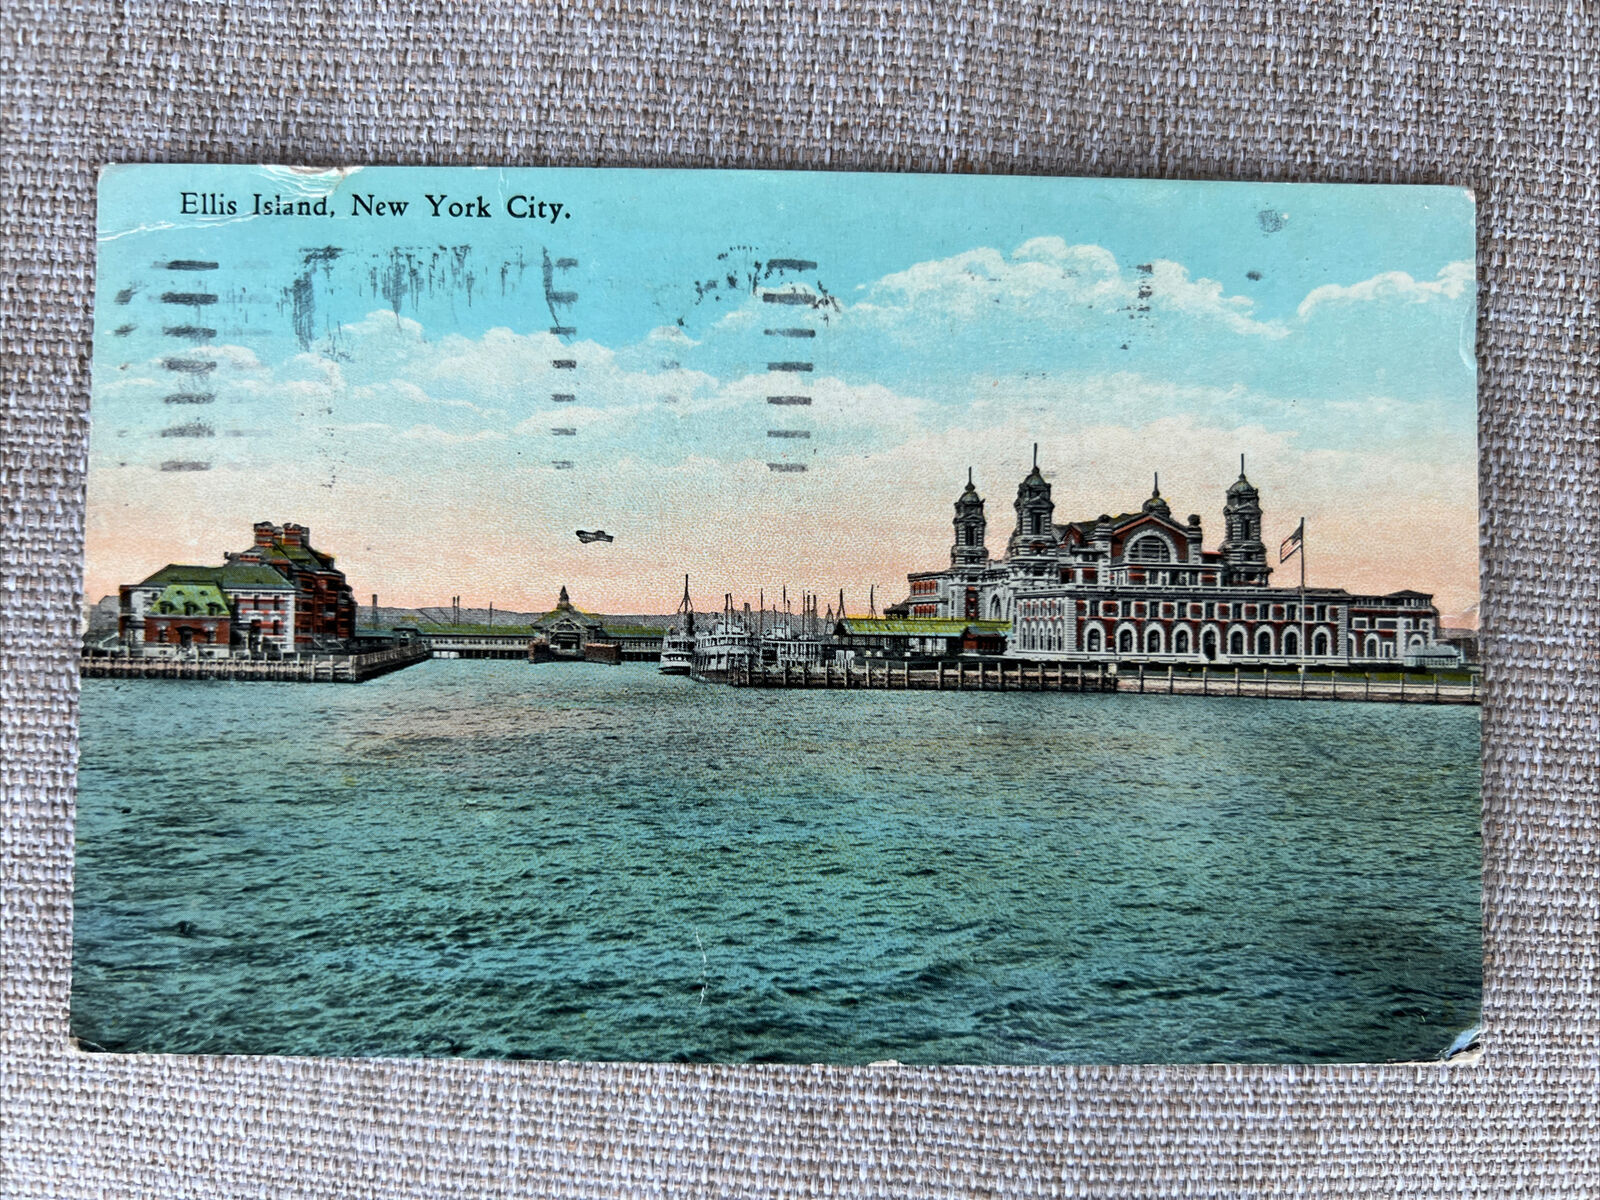 c1927 Ellis Island, New York City, N.Y. Vintage Postcard